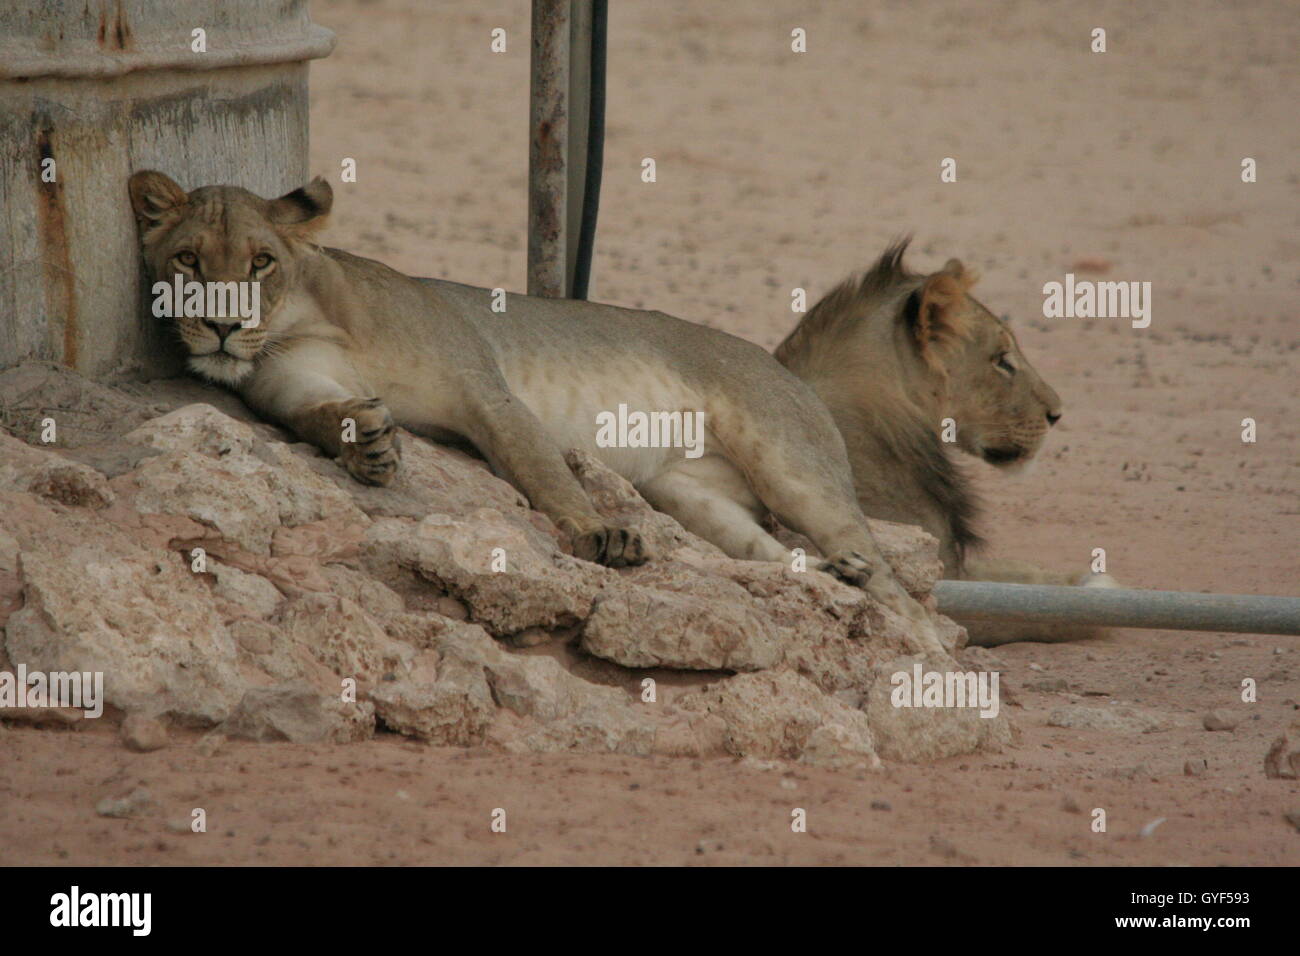 Una leonessa ha guardato direttamente nella lente della mia macchina fotografica, un ritratto di due giovani leoni è catturato. Foto Stock